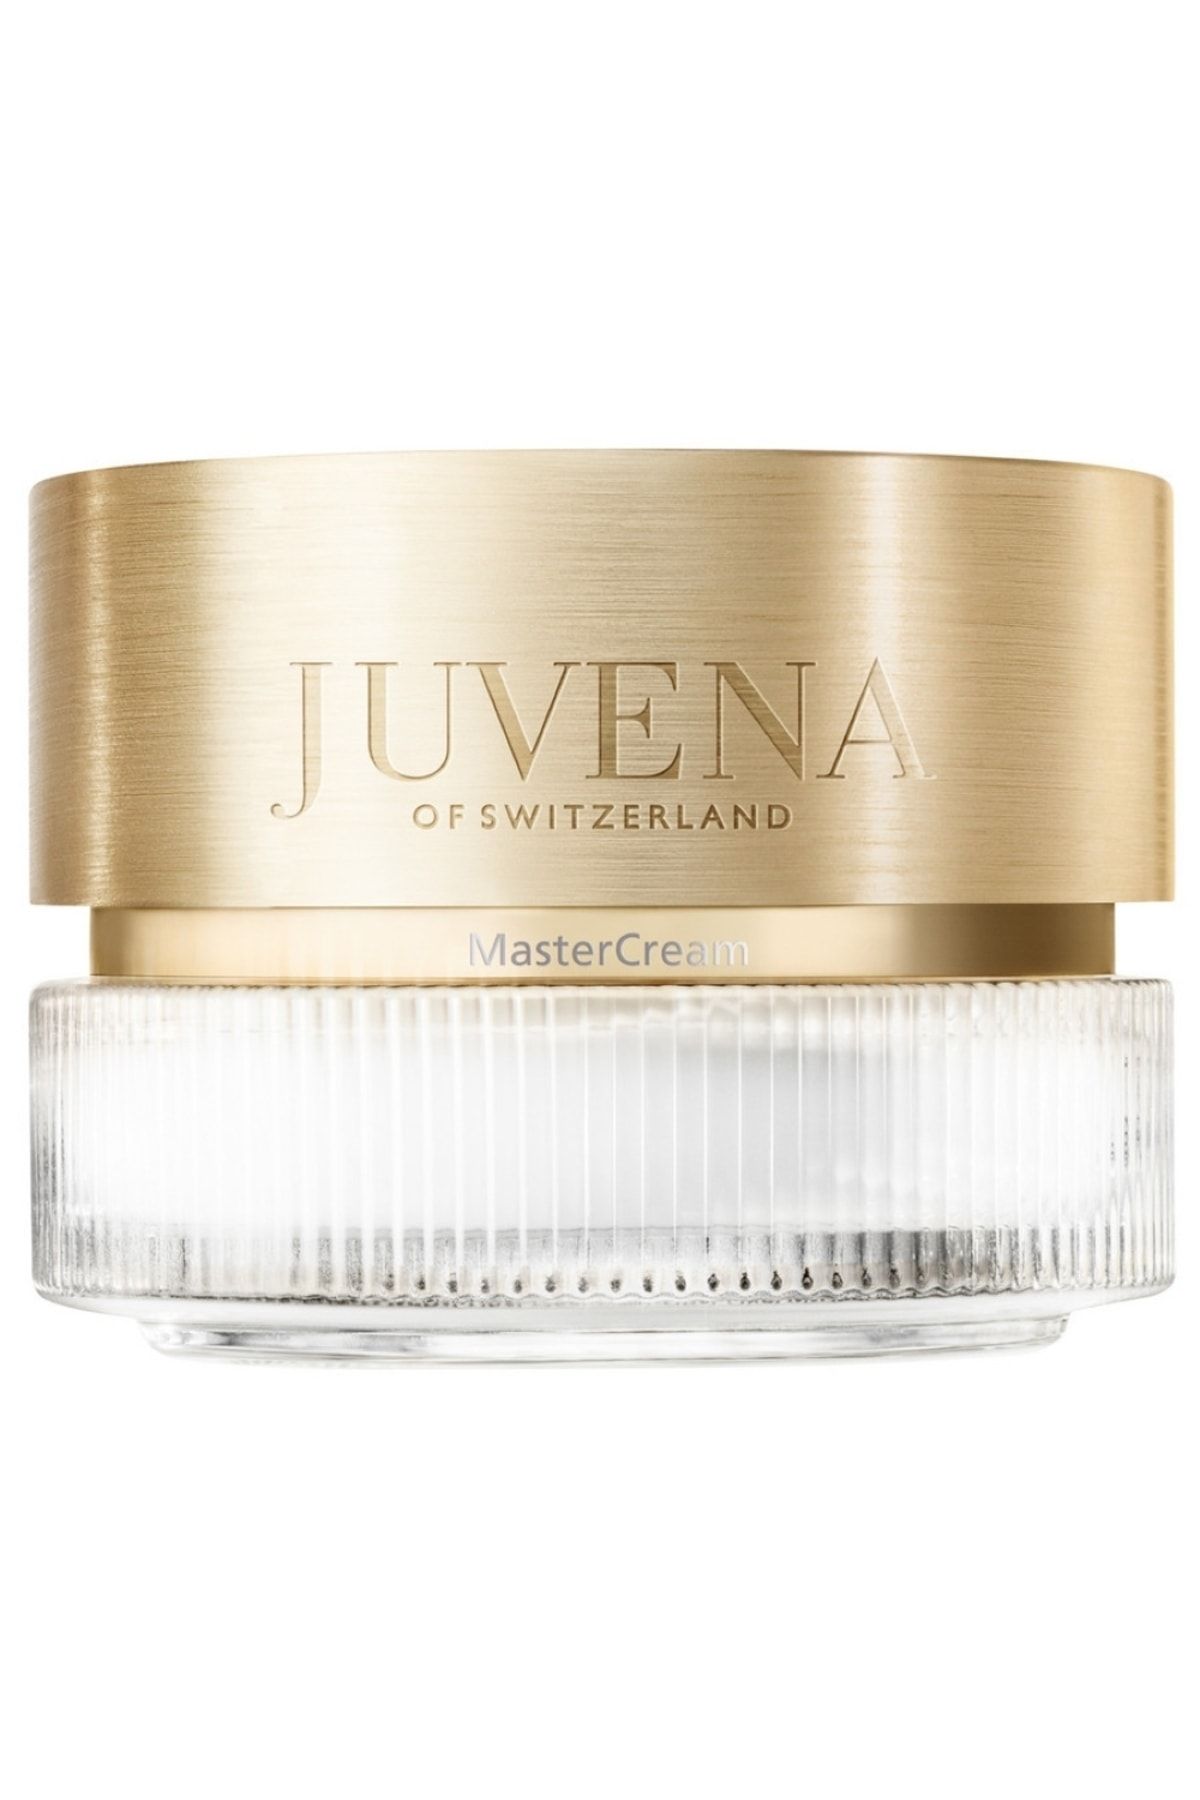 Juvena Master Cream 75ml